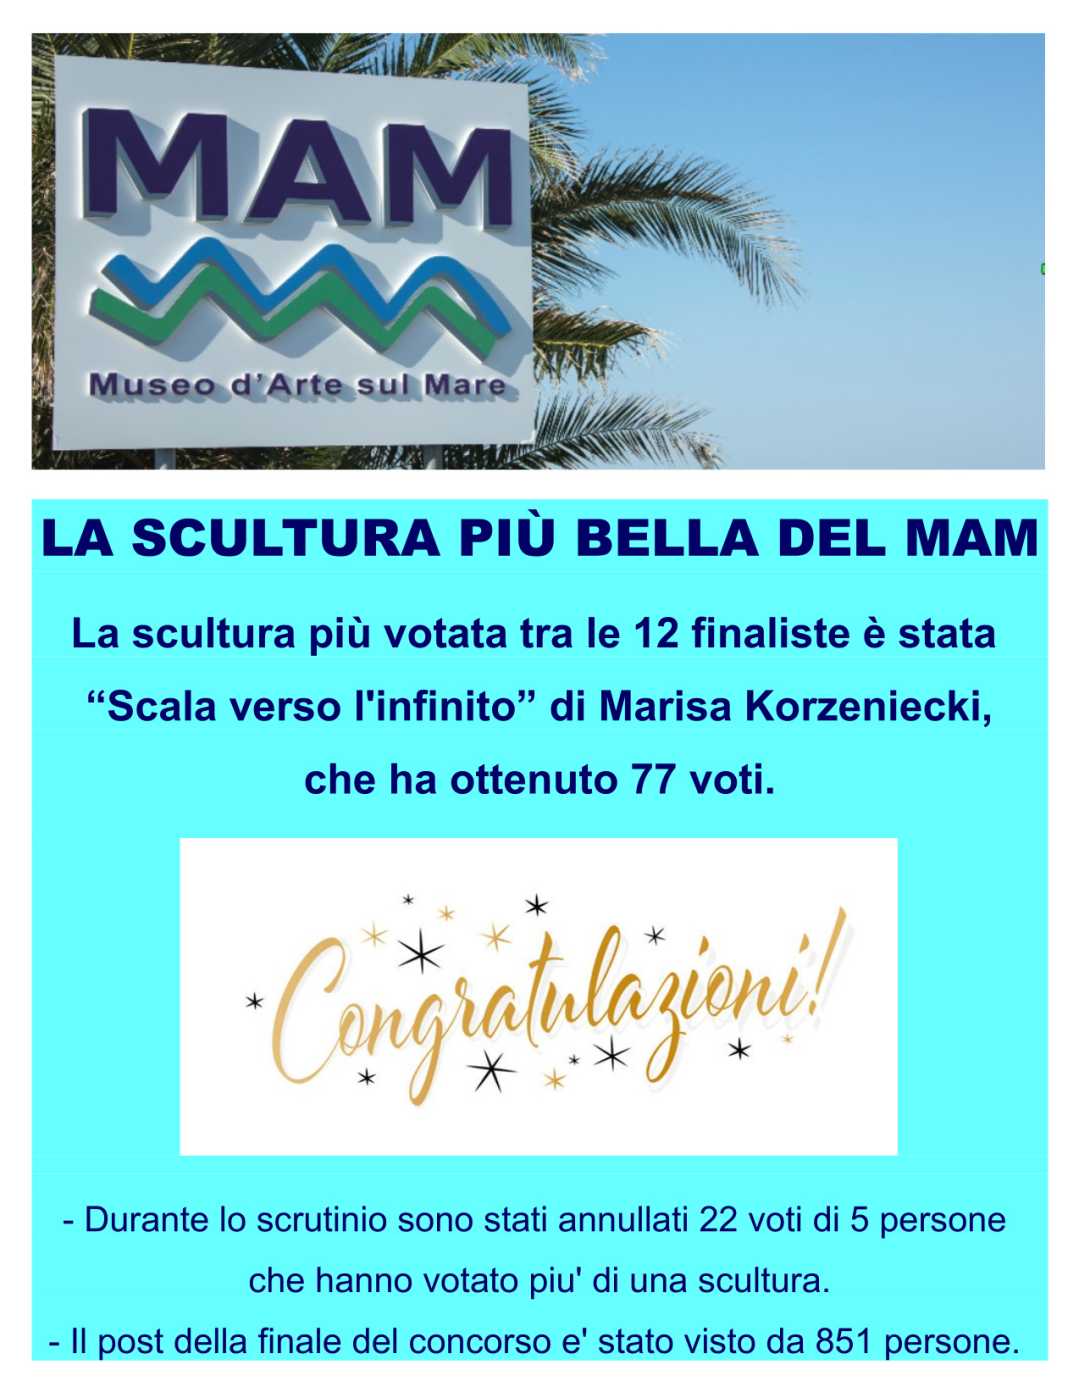 Marisa Korzeniecki, ‘Scala verso l’infinito’ proclamata scultura più bella del Mam, Museo d’Arte sul Mare